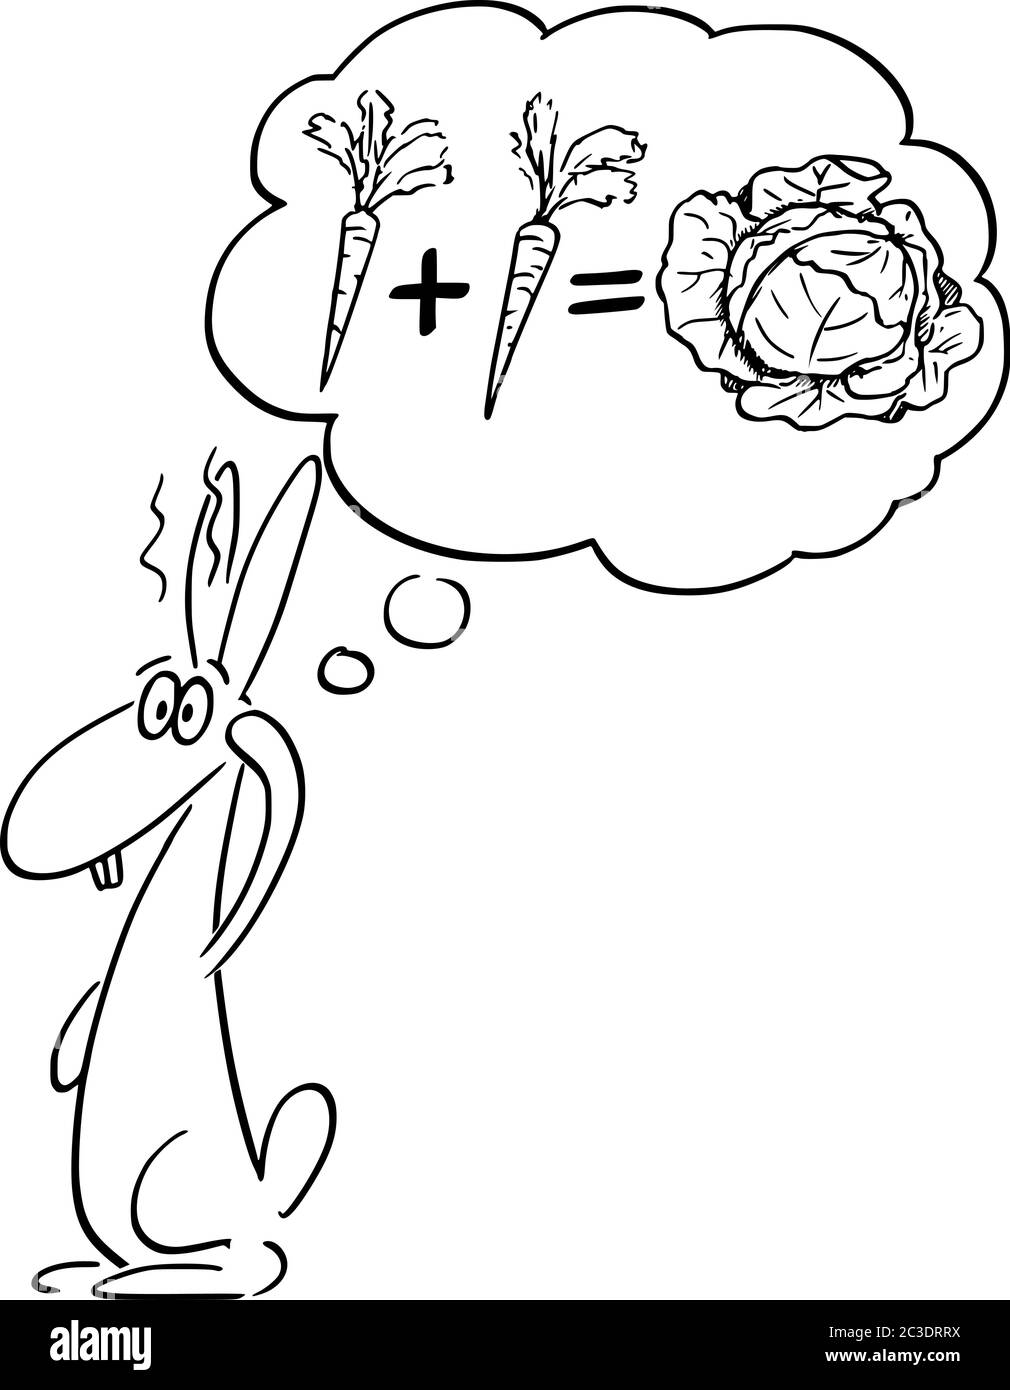 Dessin de dessin de dessin de dessin de dessin de dessin de dessin conceptuel de lapin, de lapin ou de lièvre pensant à la carotte et aux mathématiques. Concept d'éducation, d'intelligence et de science. Illustration de Vecteur